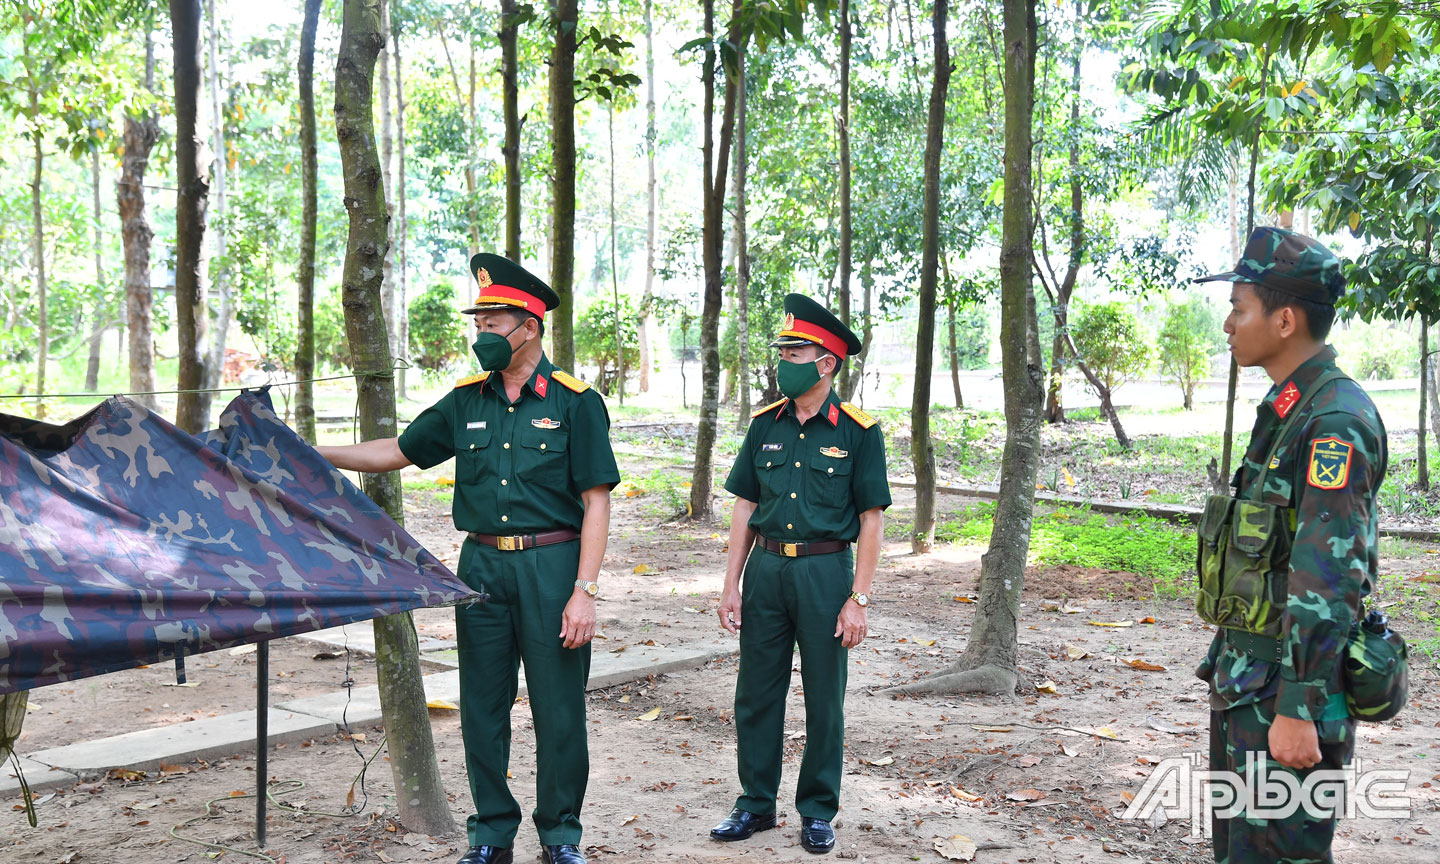 Đại tá Huỳnh Chiến Công, Phó Tham mưu trưởng Quân khu 9 kiểm tra huấn luyện kỹ thuật mắc tăng võng. 